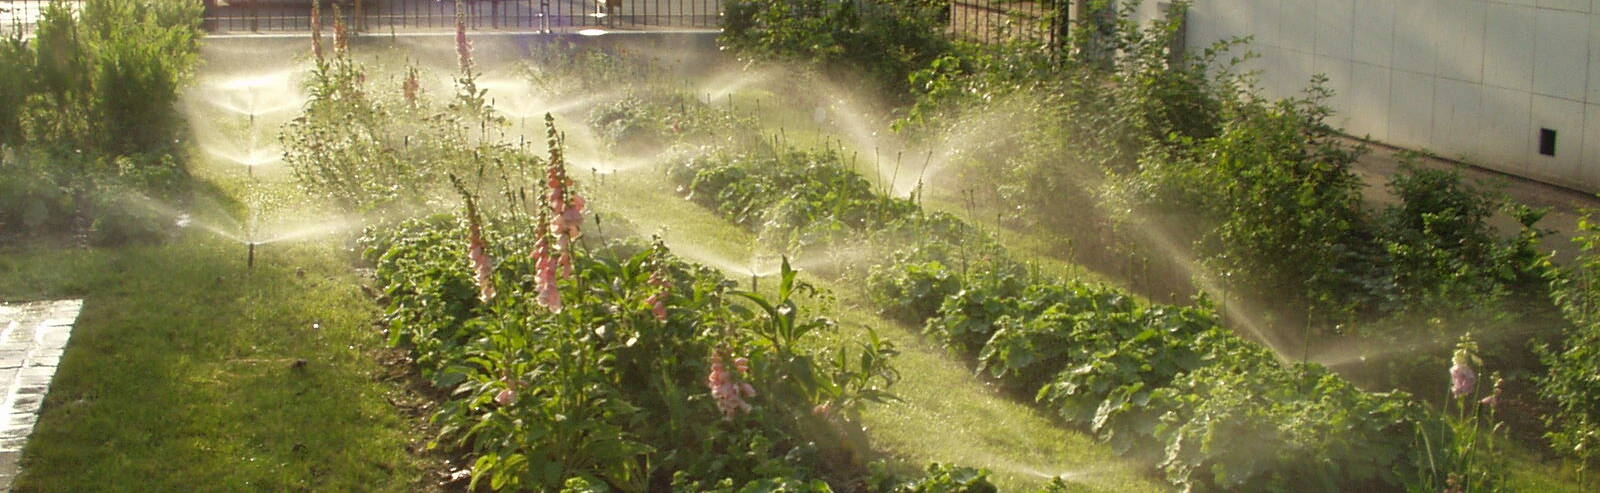 Ilots de chaleur : lutter avec des végétaux… et de l’eau !